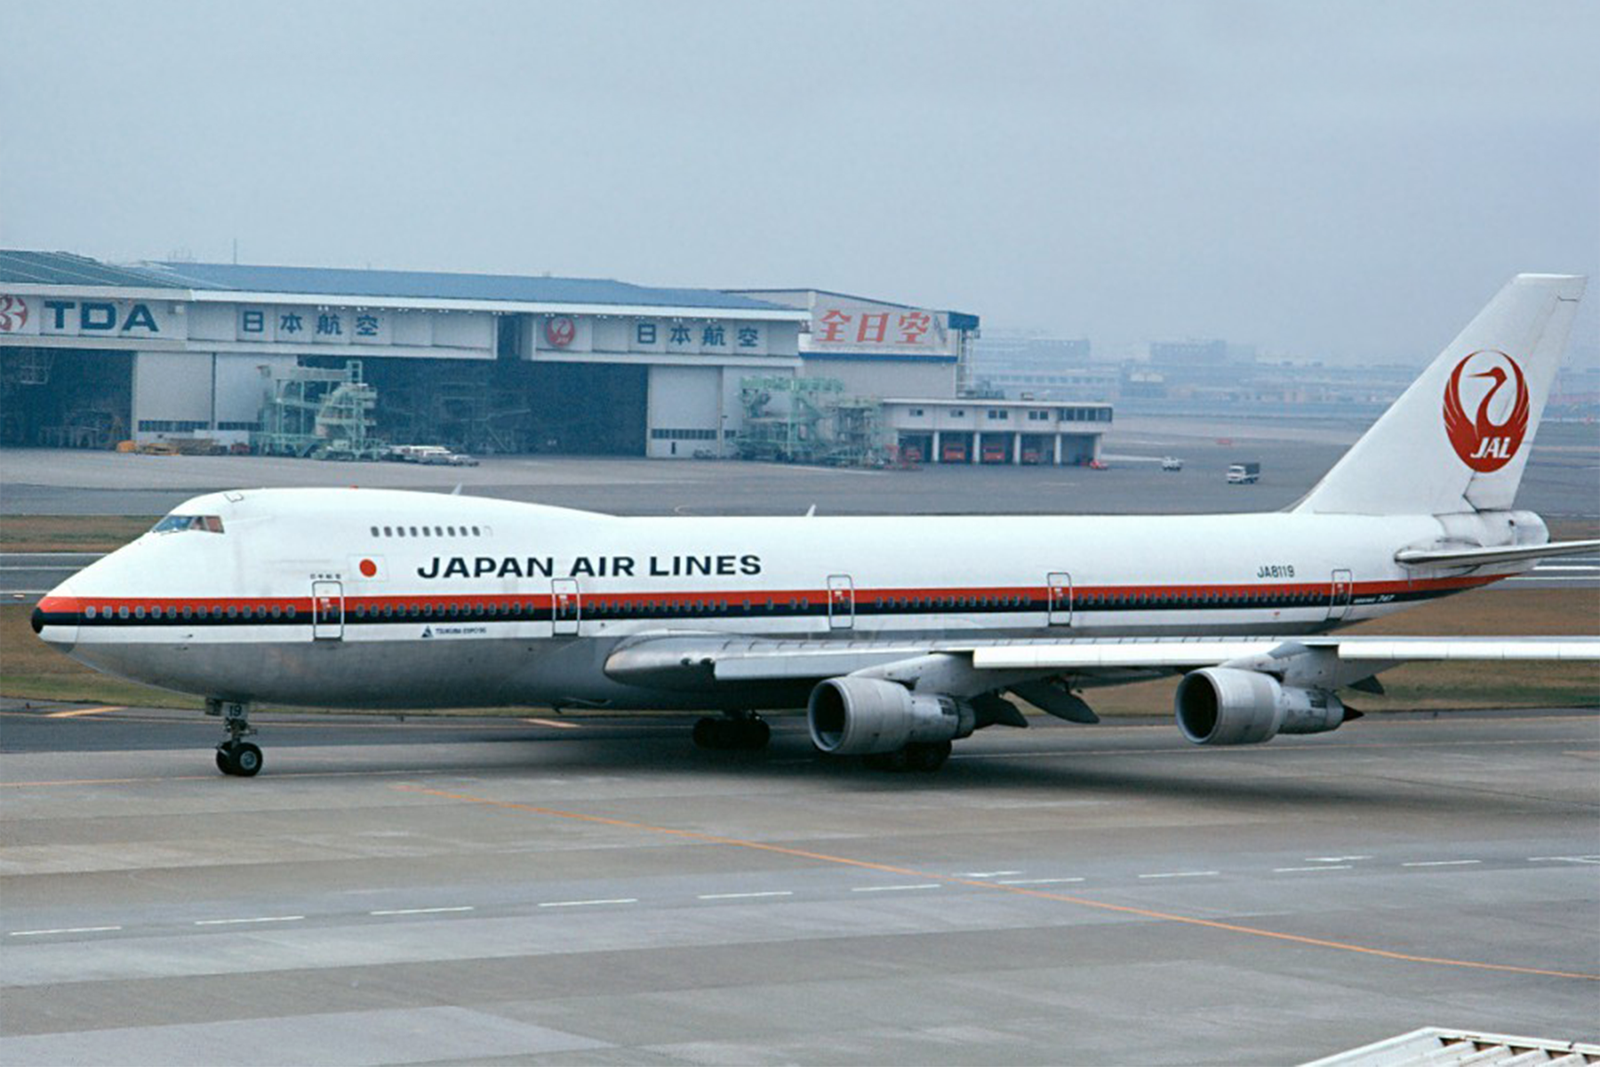 El Boeing 747SR de Japan Airlines implicado en el accidente tenía la matrícula JA8119. Foto: Kjell Nilsson